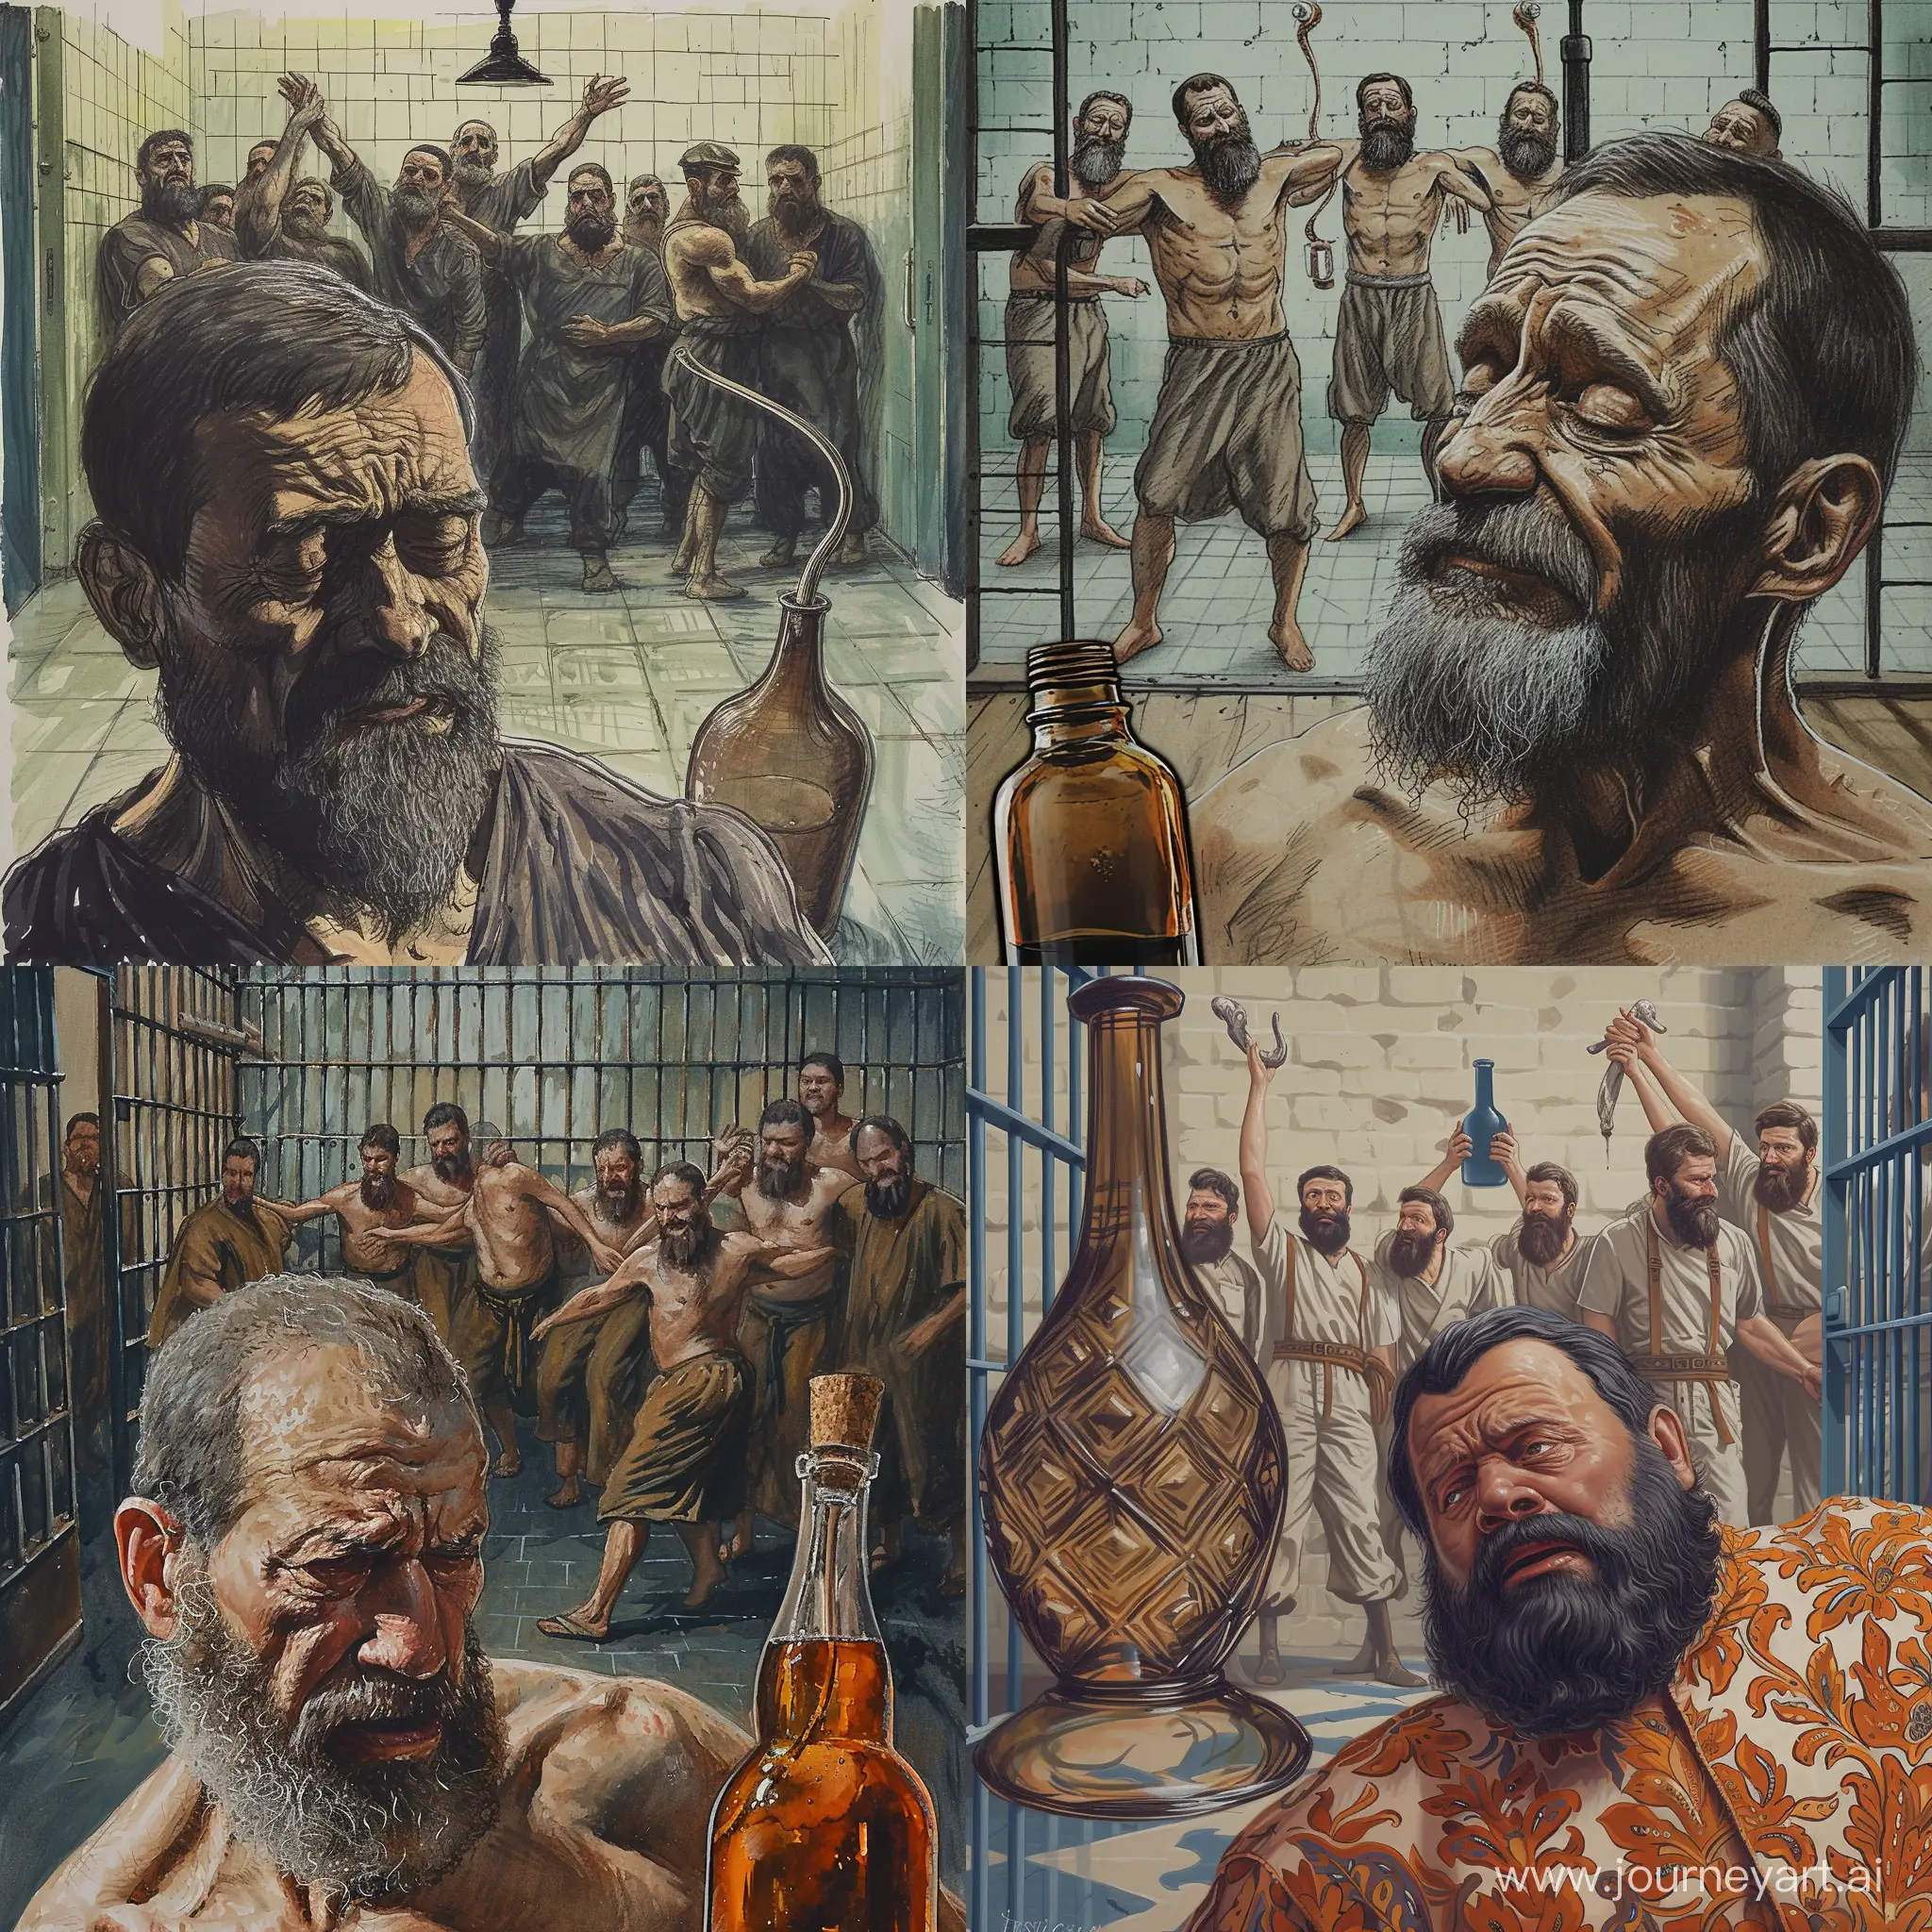 Lonely-Girkin-in-Prison-Cell-Amidst-Joyful-Bearded-Men-Dancing